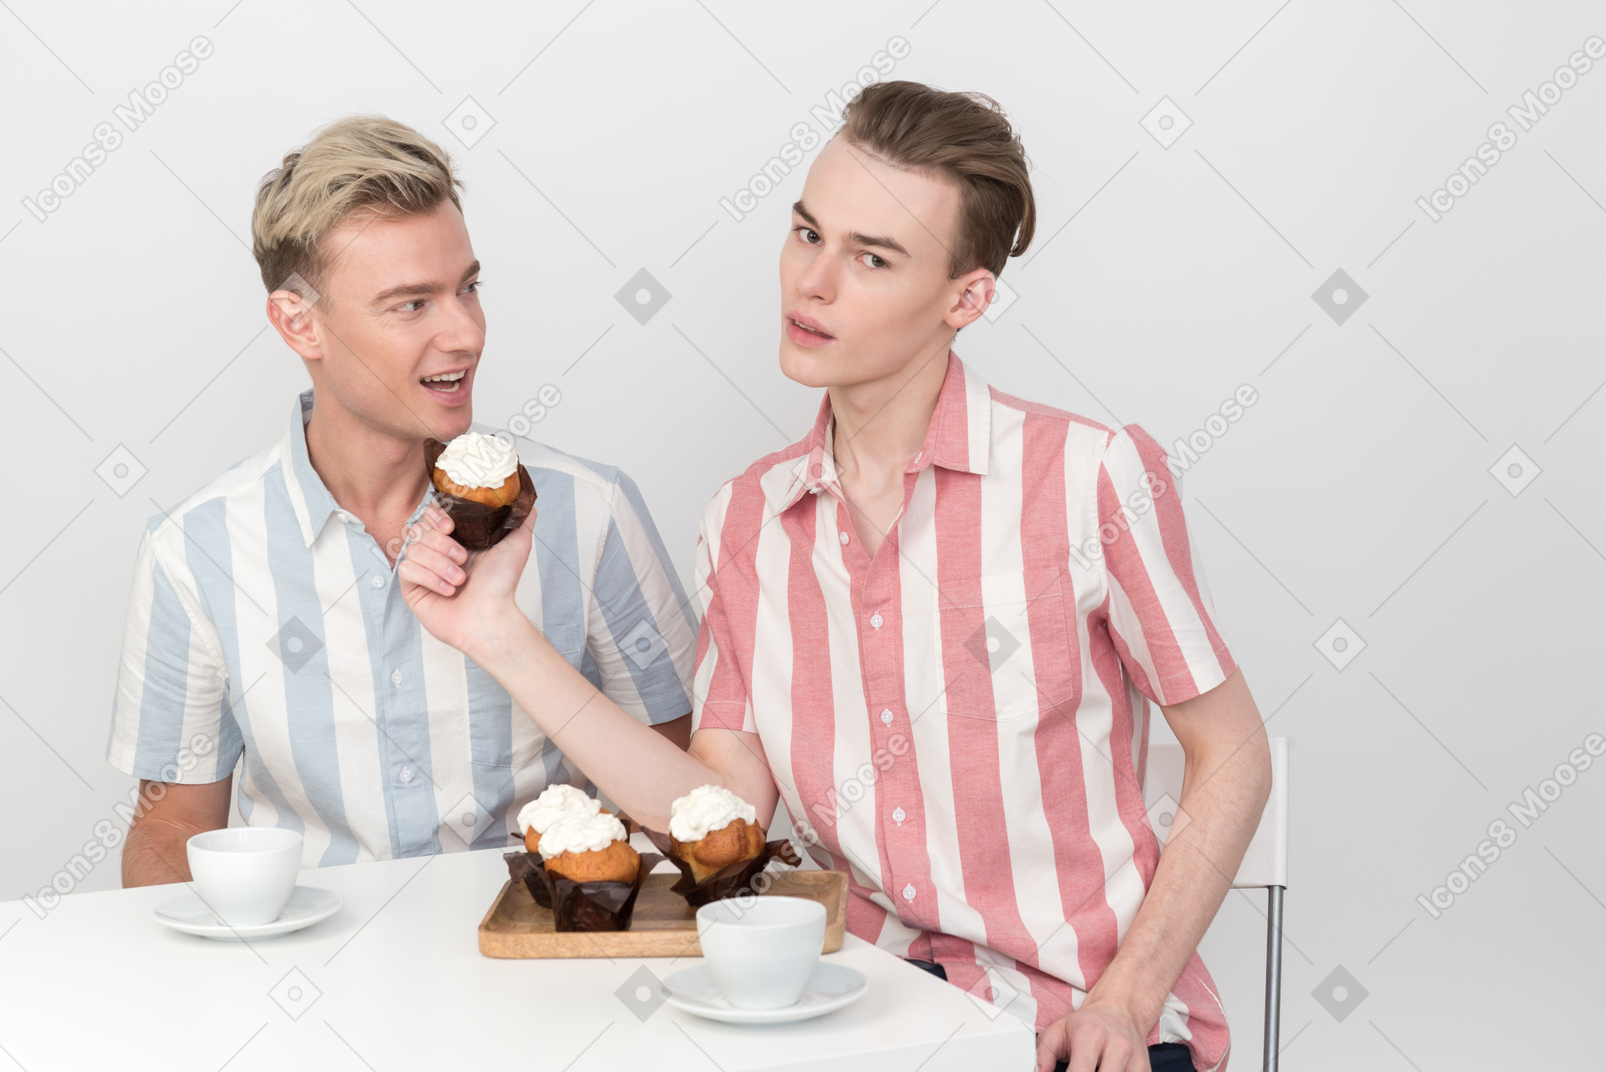 Kerl schlägt seinem partner vor, einen cupcake zu essen